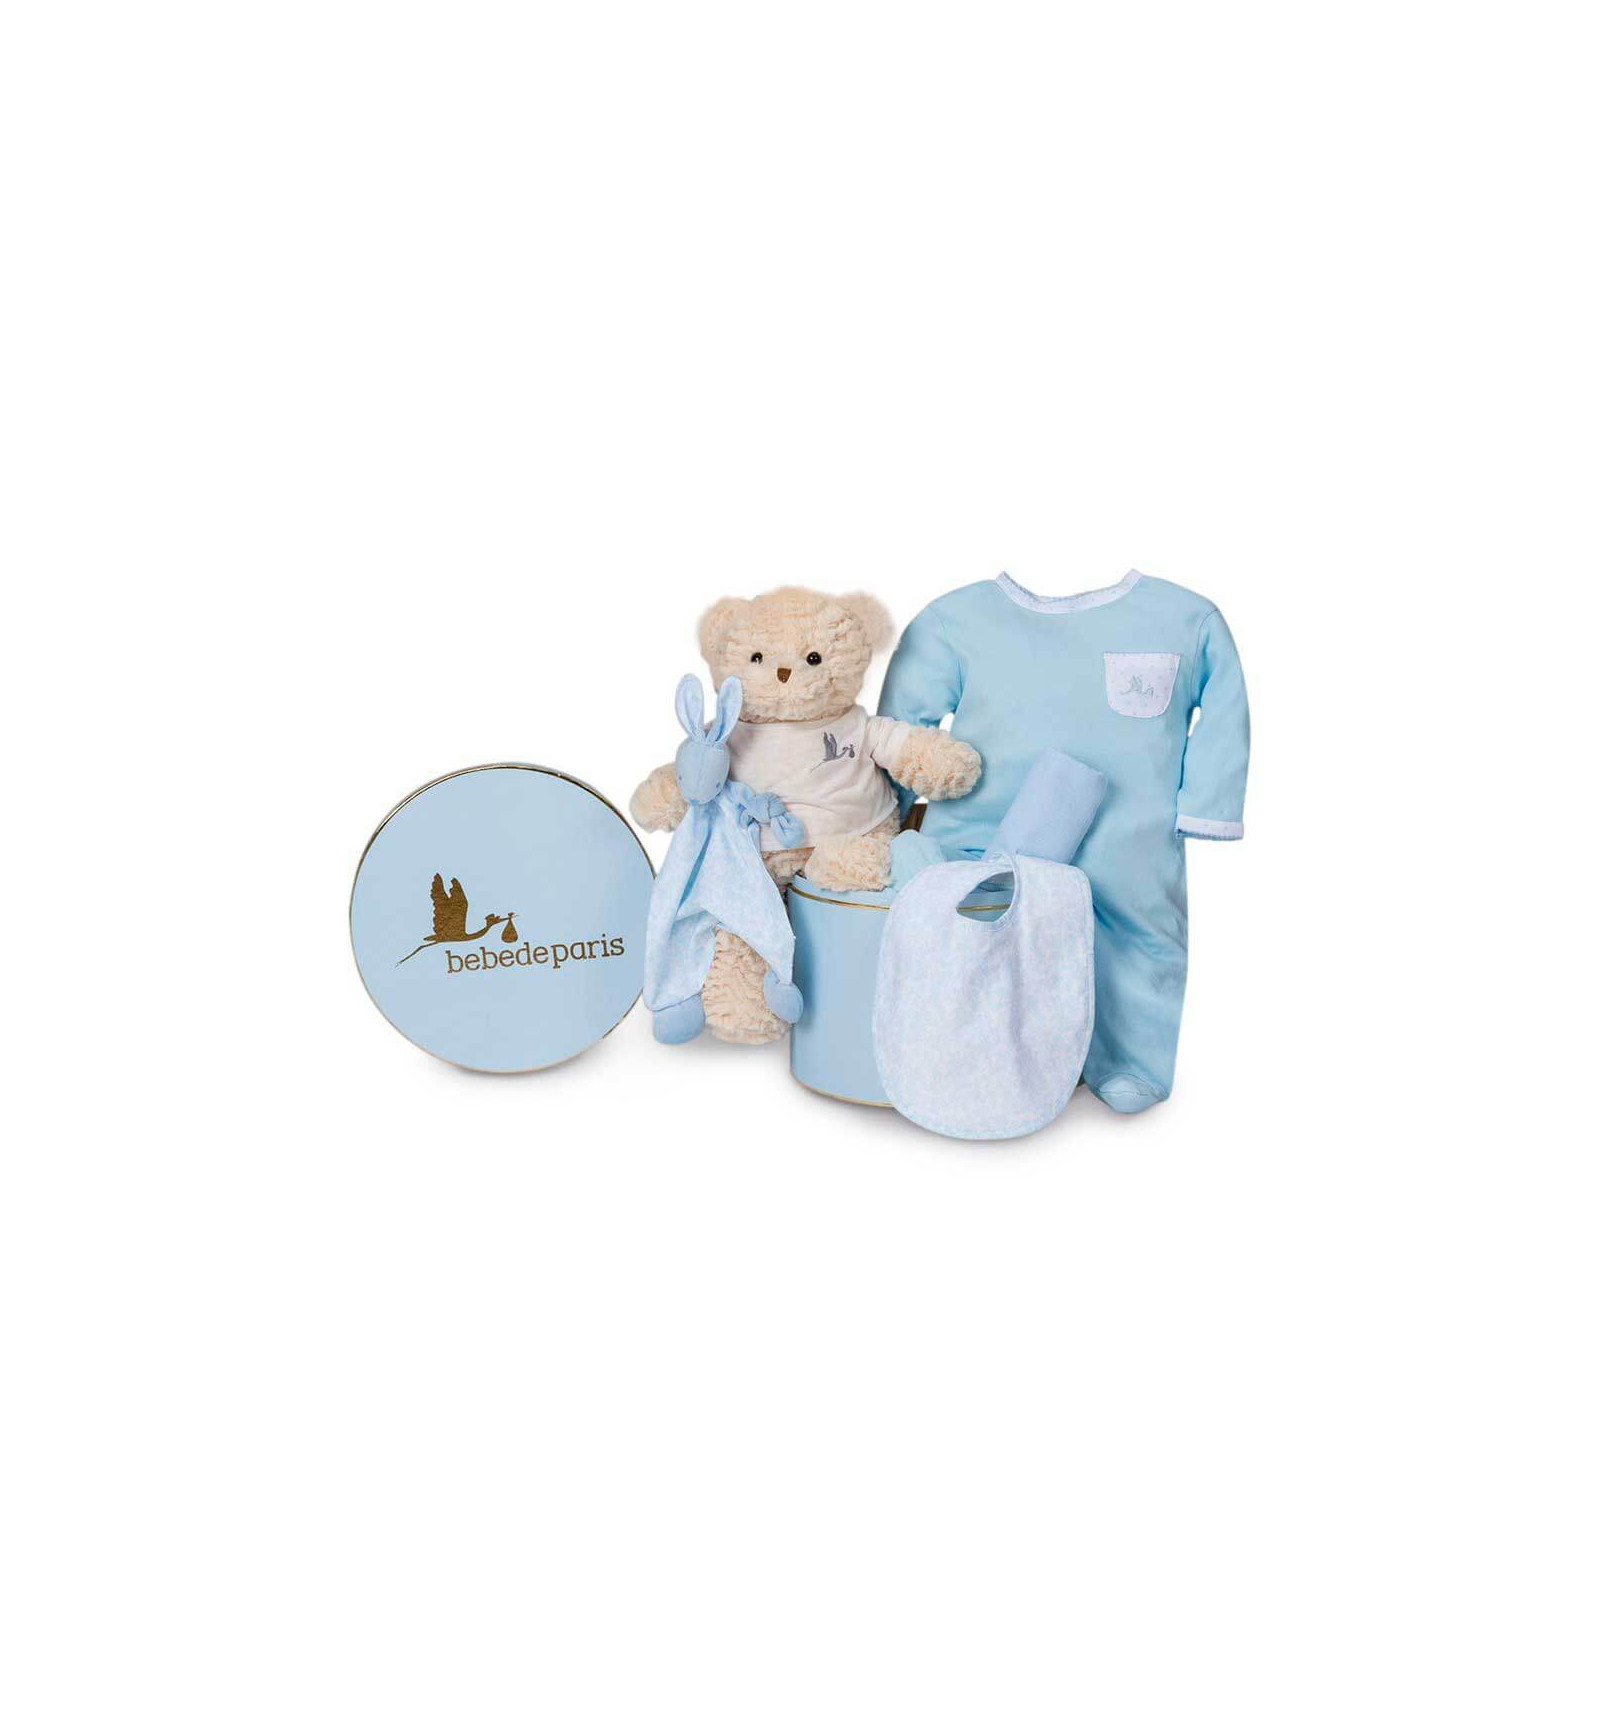 Canastilla regalo bebé en Caja Vintage Clásica Plena con Oso BebeDeParis-Rosa set regalo recién nacido